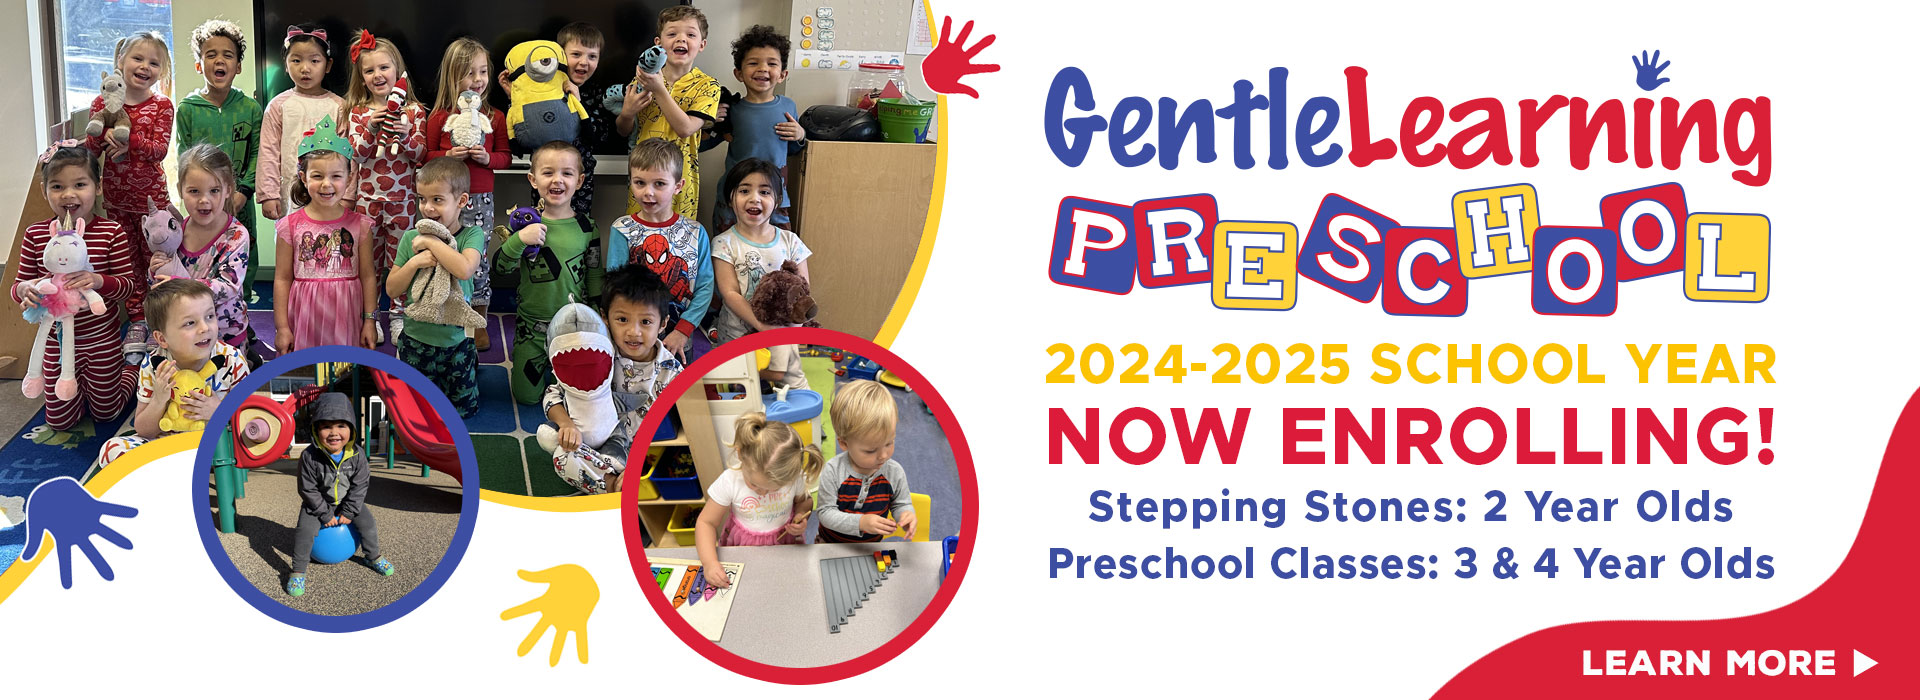 Gentle Learning Preschool 2024-2025 School Year Open Enrollment